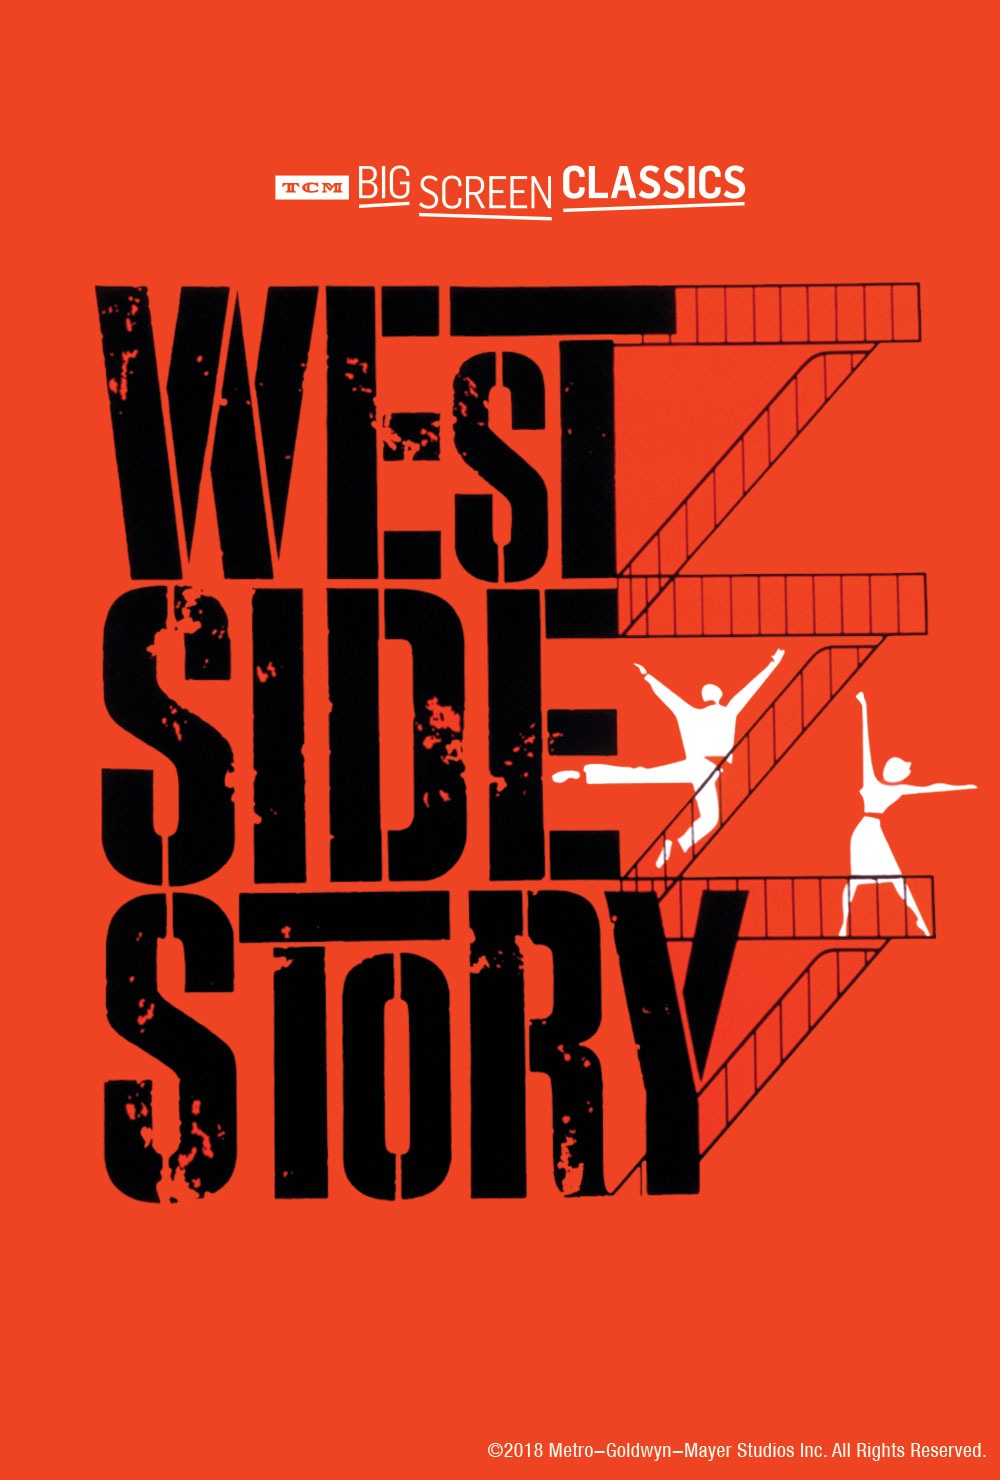 Una prima locandina del film "West side story", il progetto Fox che sarà continuato dalla Disney.